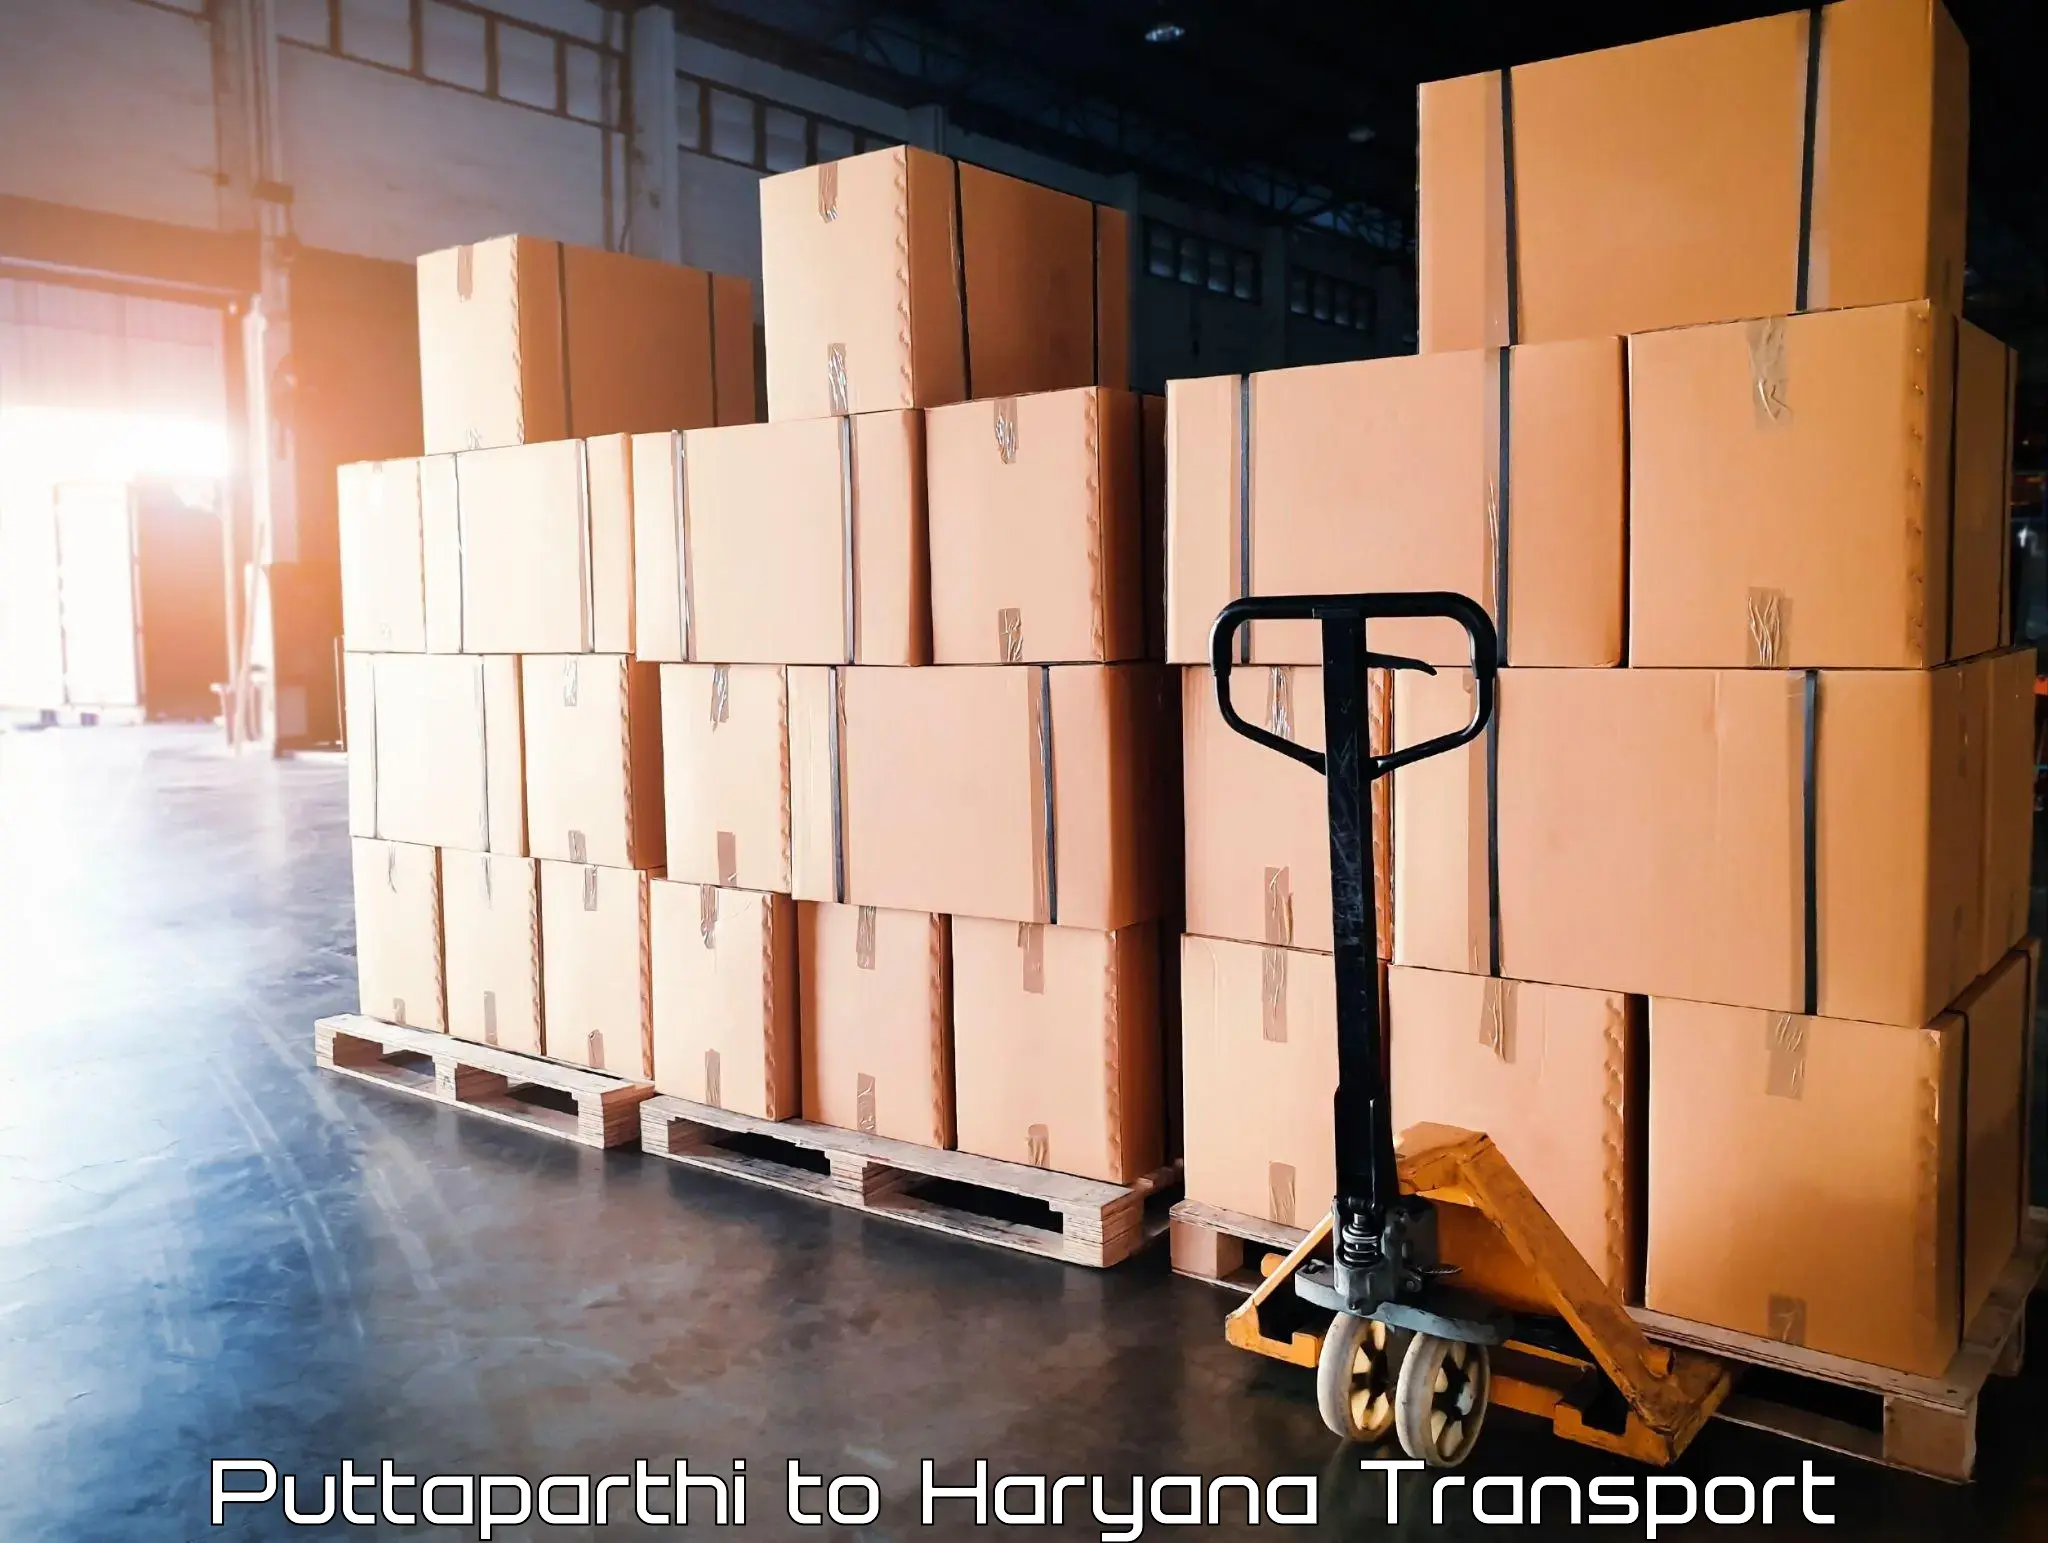 Transport in sharing Puttaparthi to Odhan